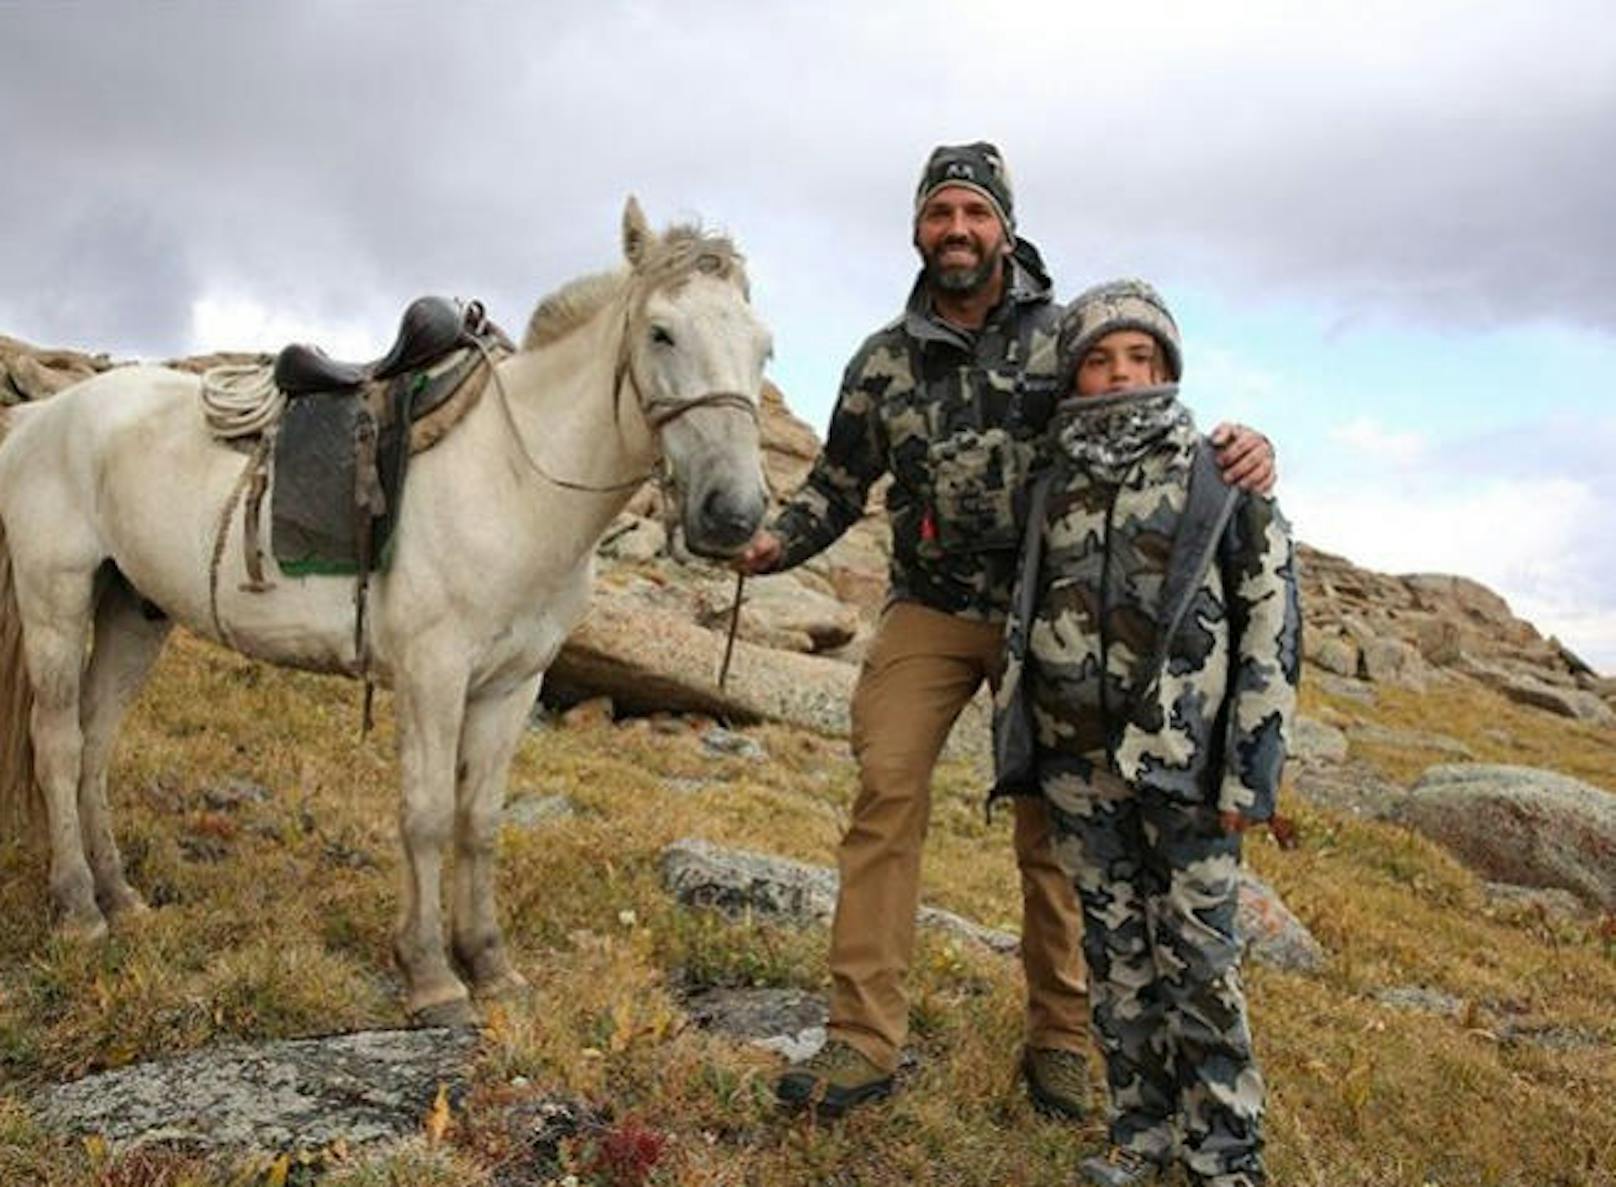 Zusammen mit einem seiner Söhne unternahm Trump Jr. eine siebentägige Jagdtour im Westen des Landes.